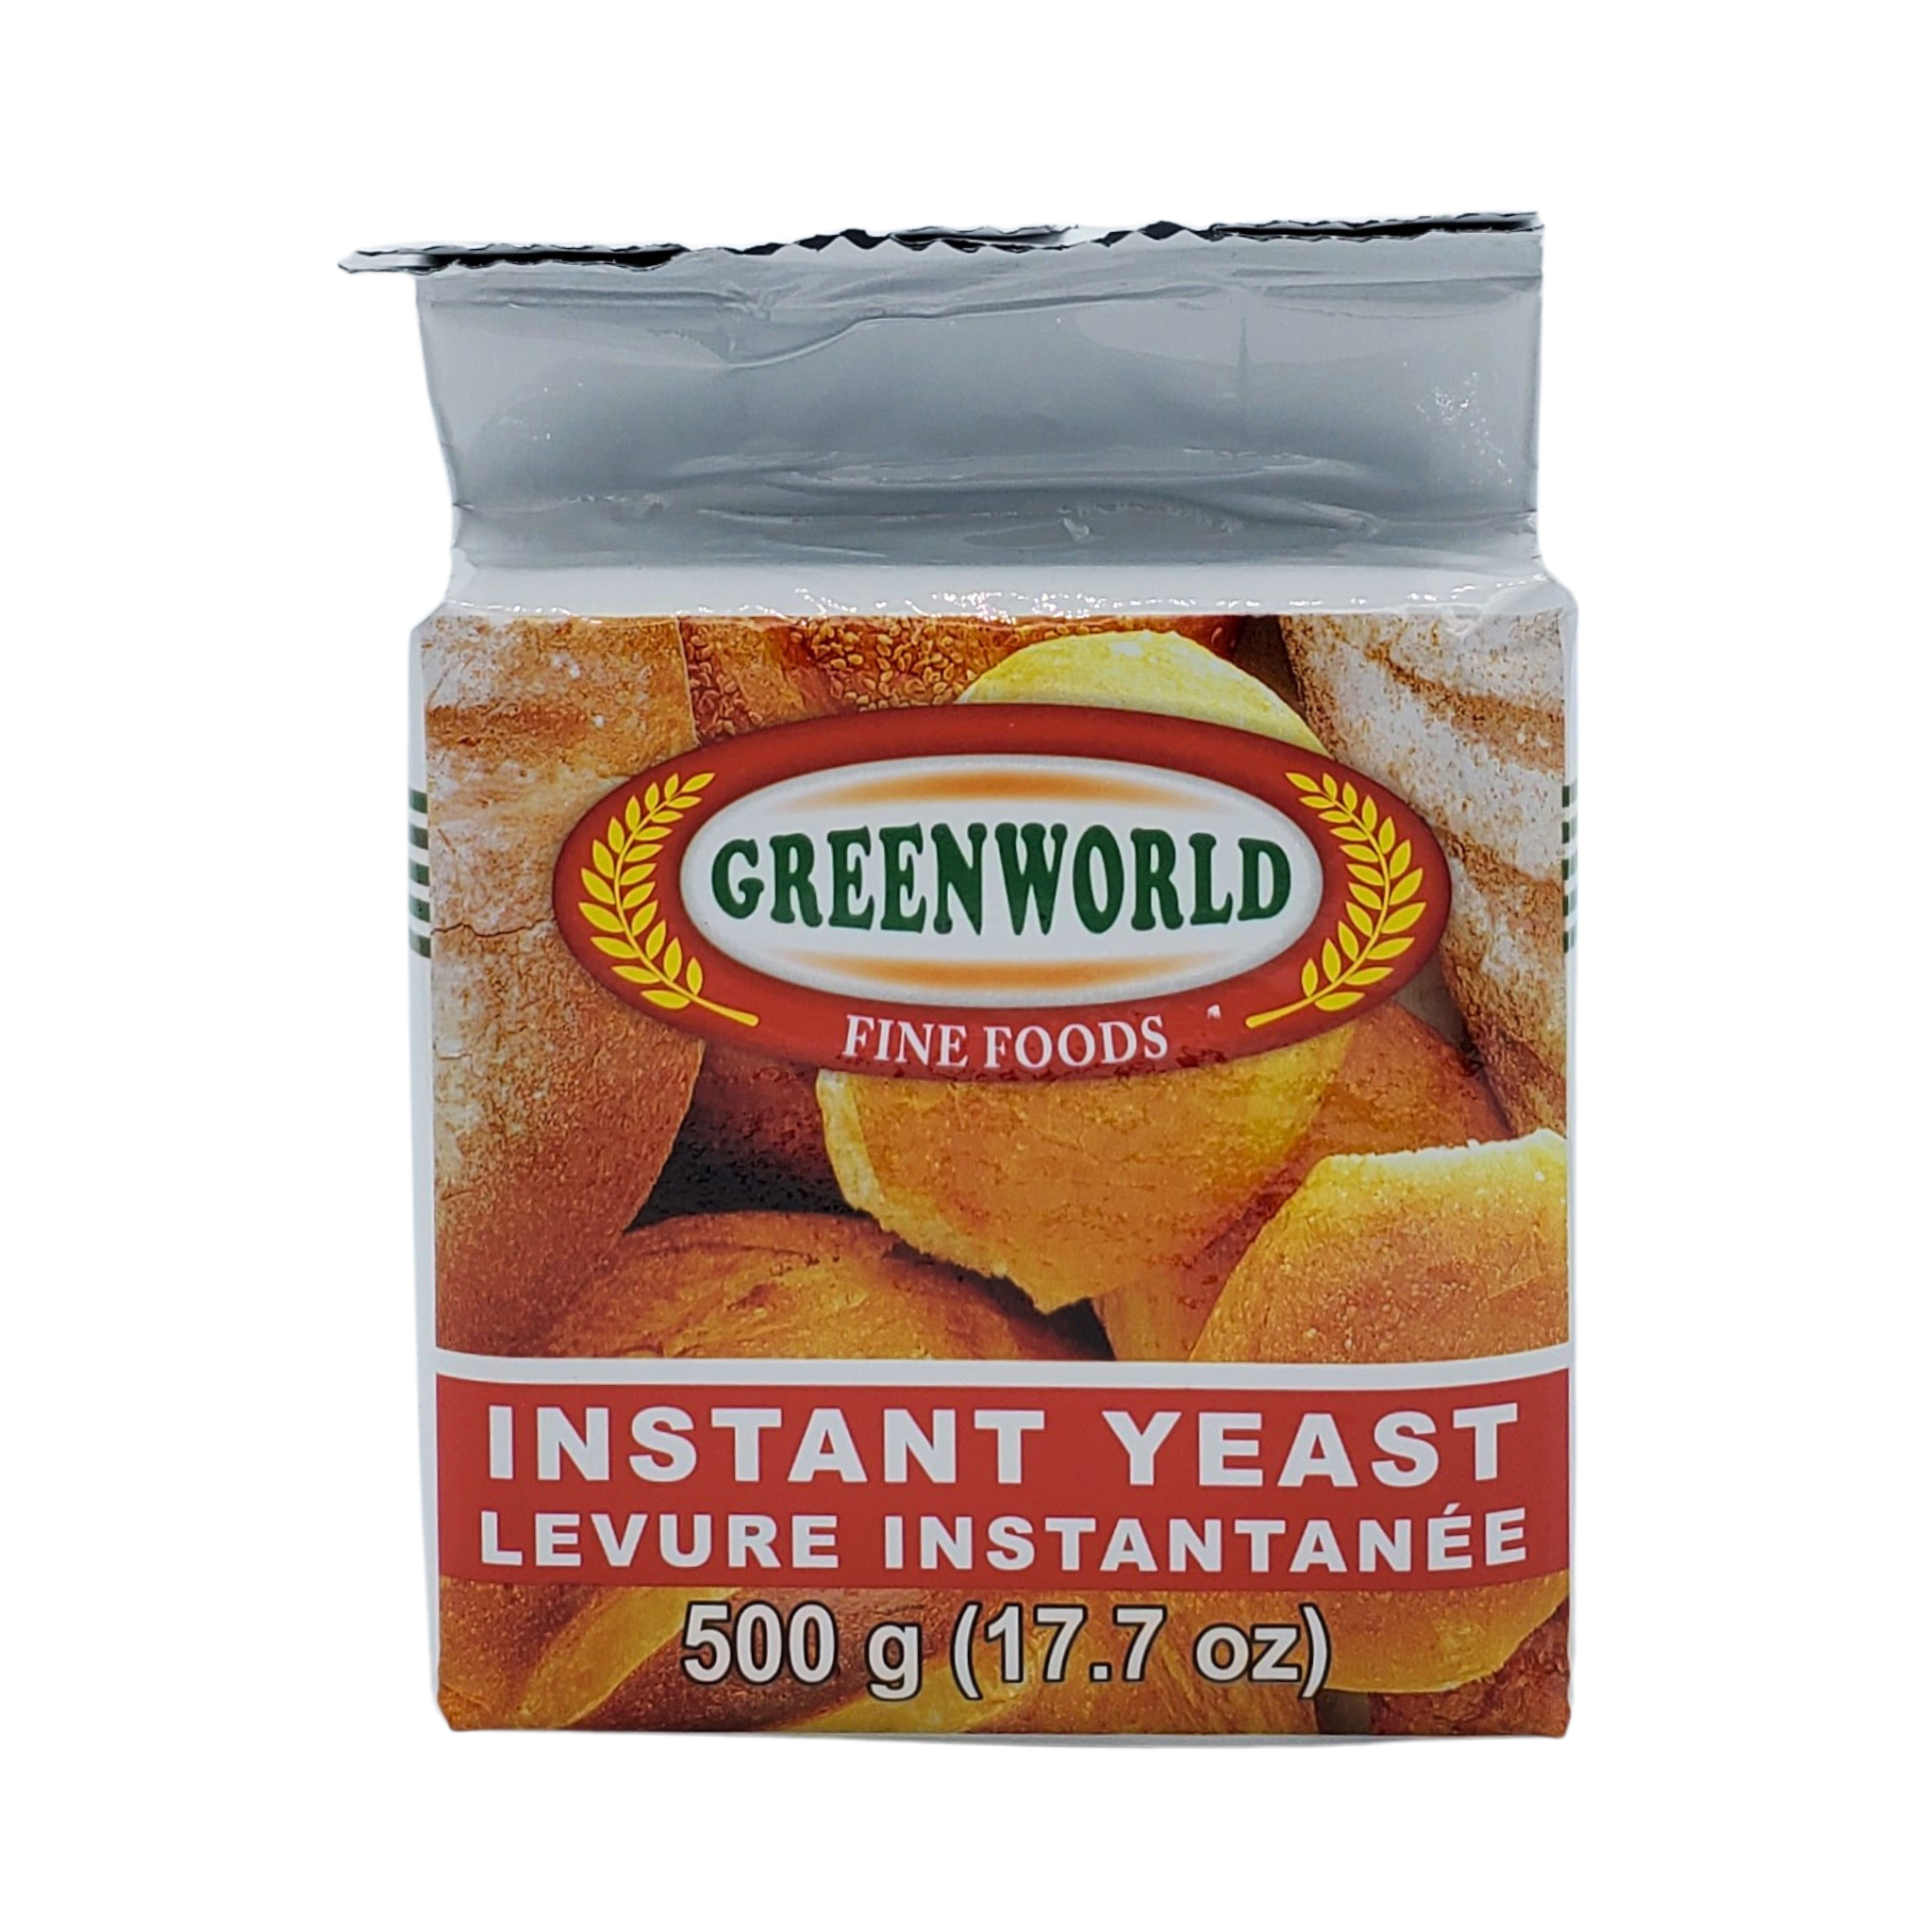 Greenworld Instant Yeast 500g 17.7oz - Levure Instantnee